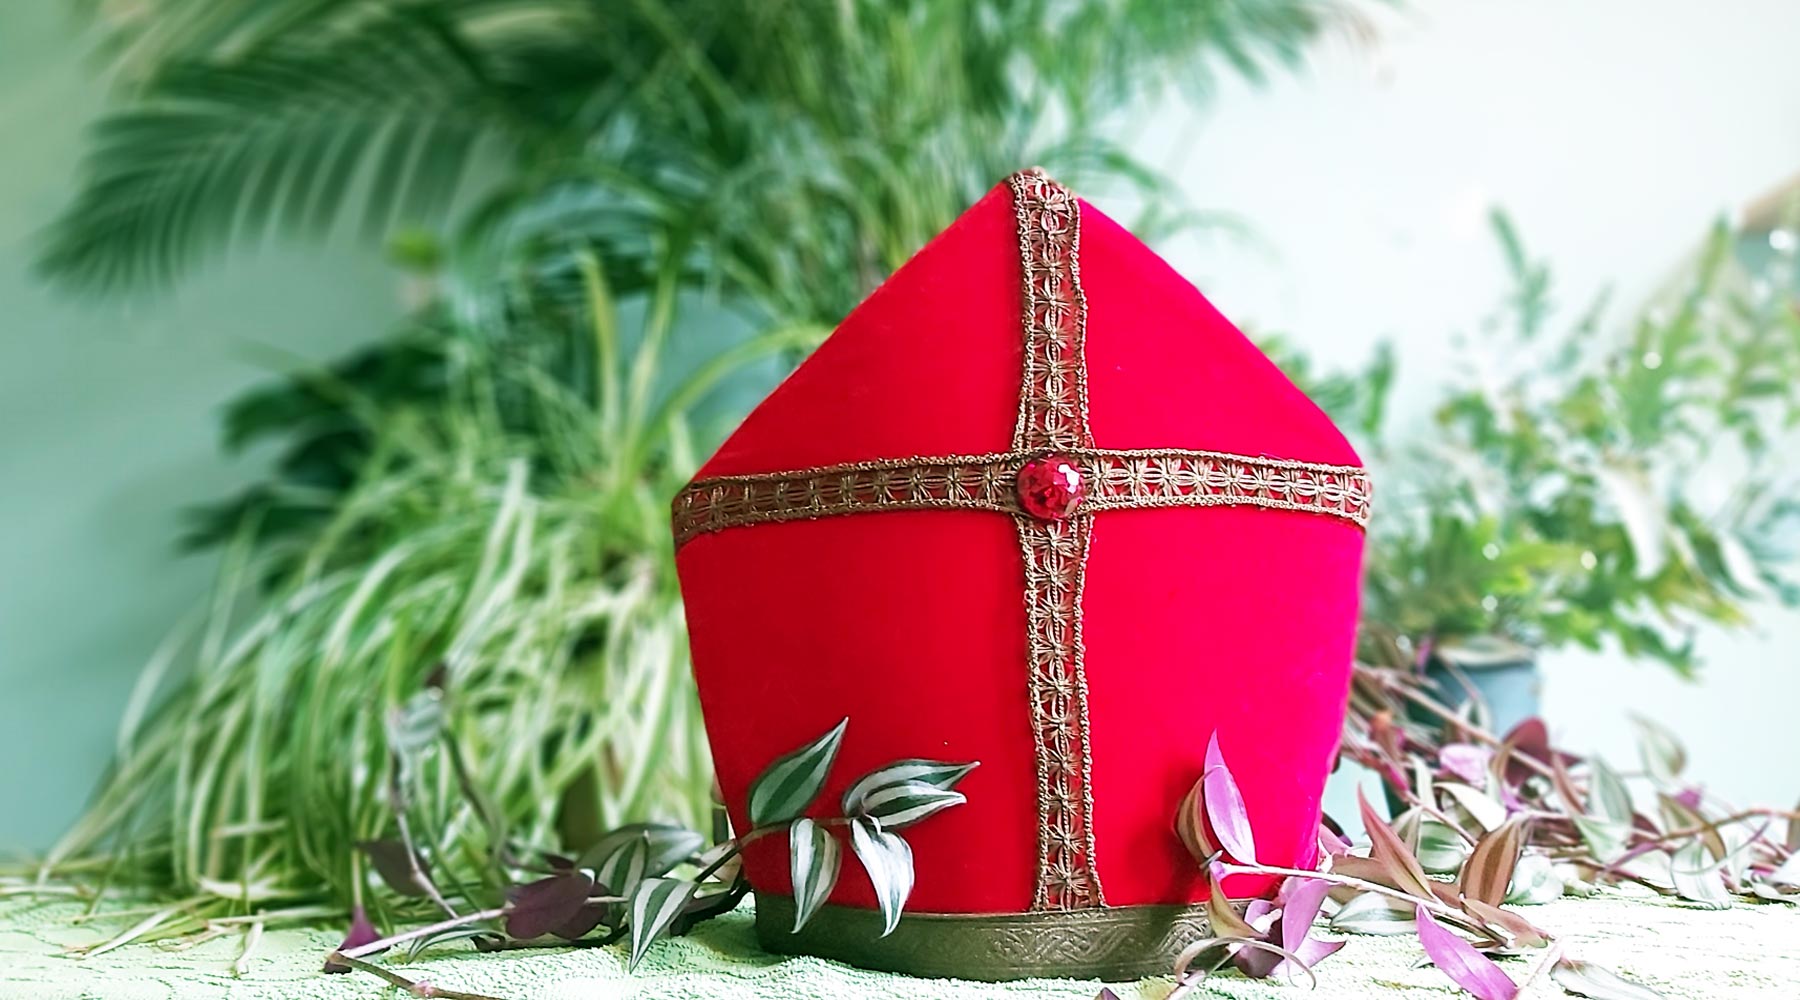 15 Ideeën om duurzaam Sinterklaas te vieren + duurzame Sinterklaascadeaus